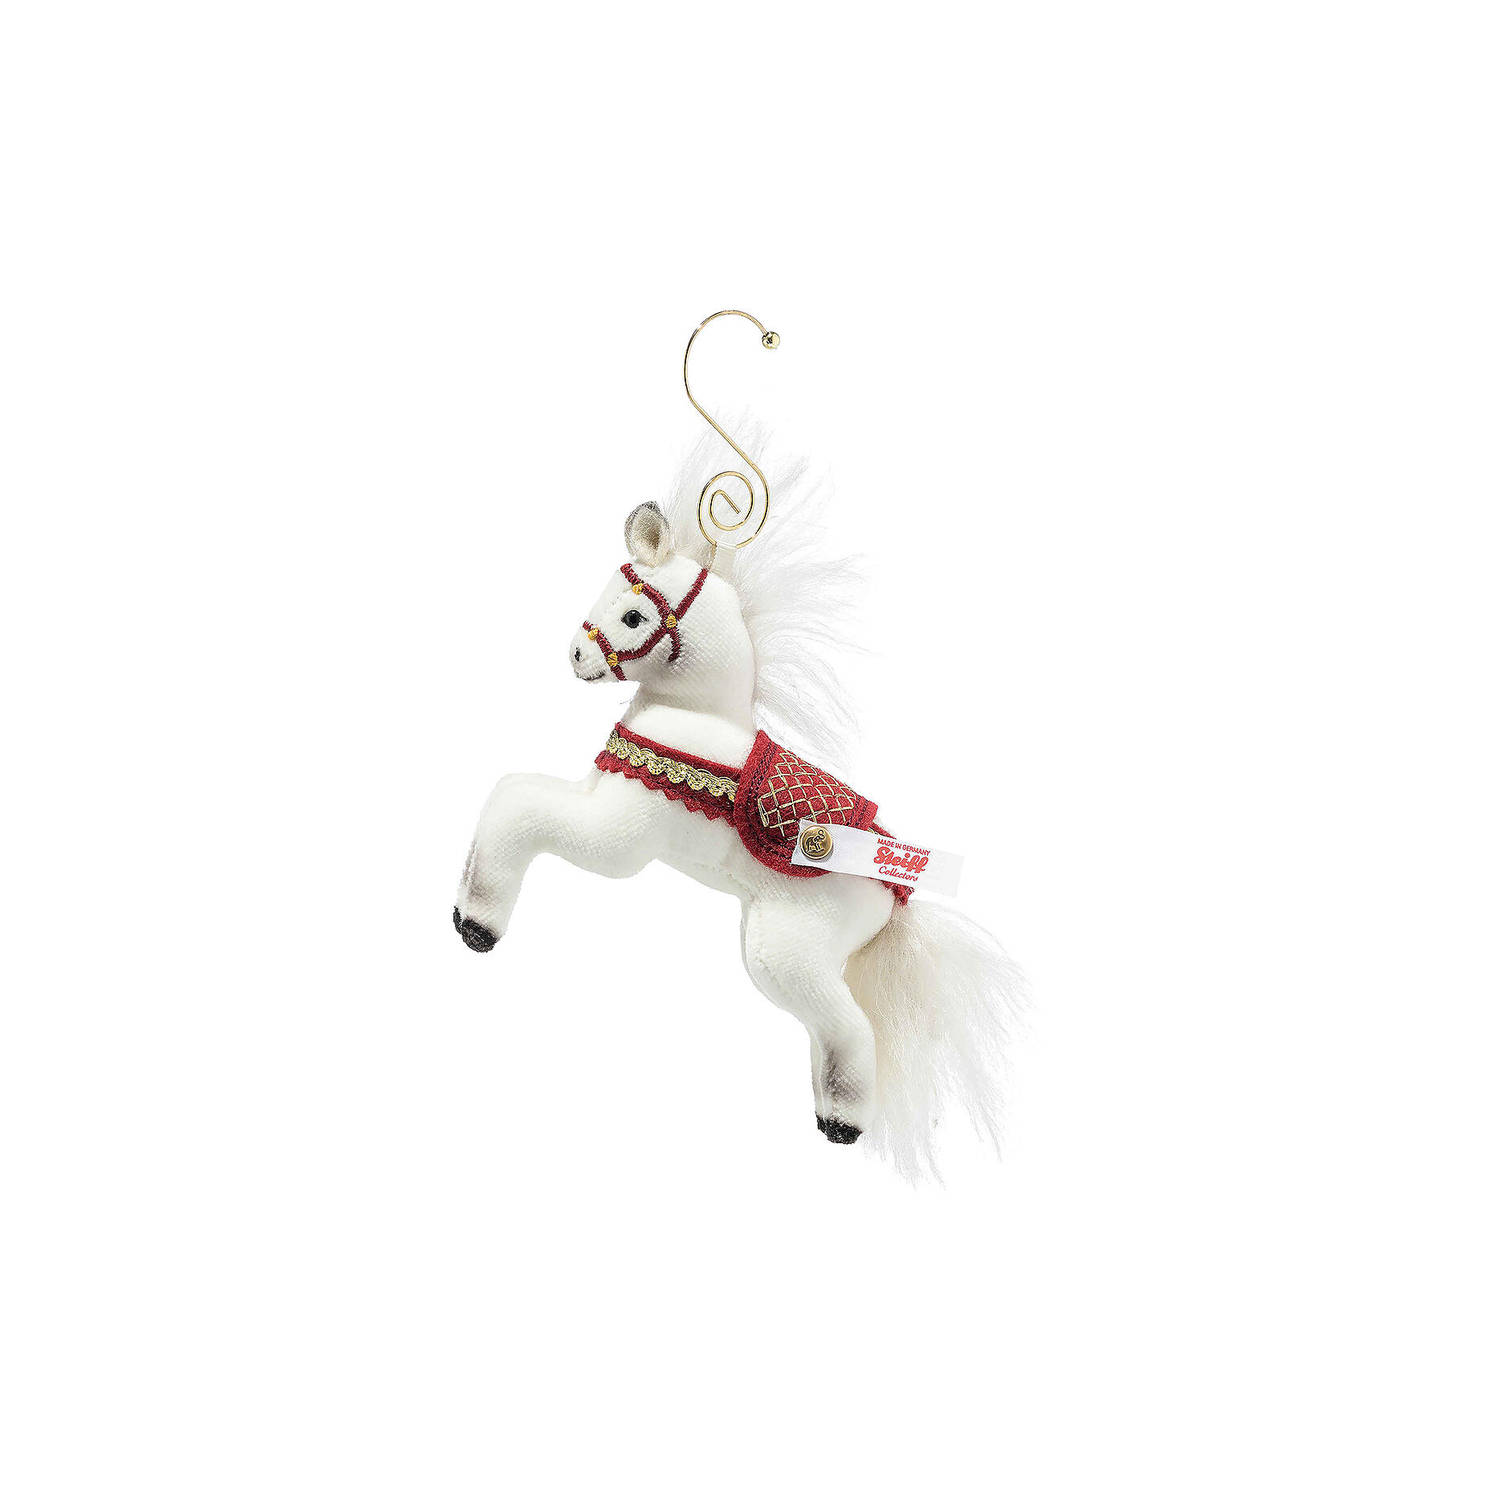 Steiff kerst ornament paard, wit